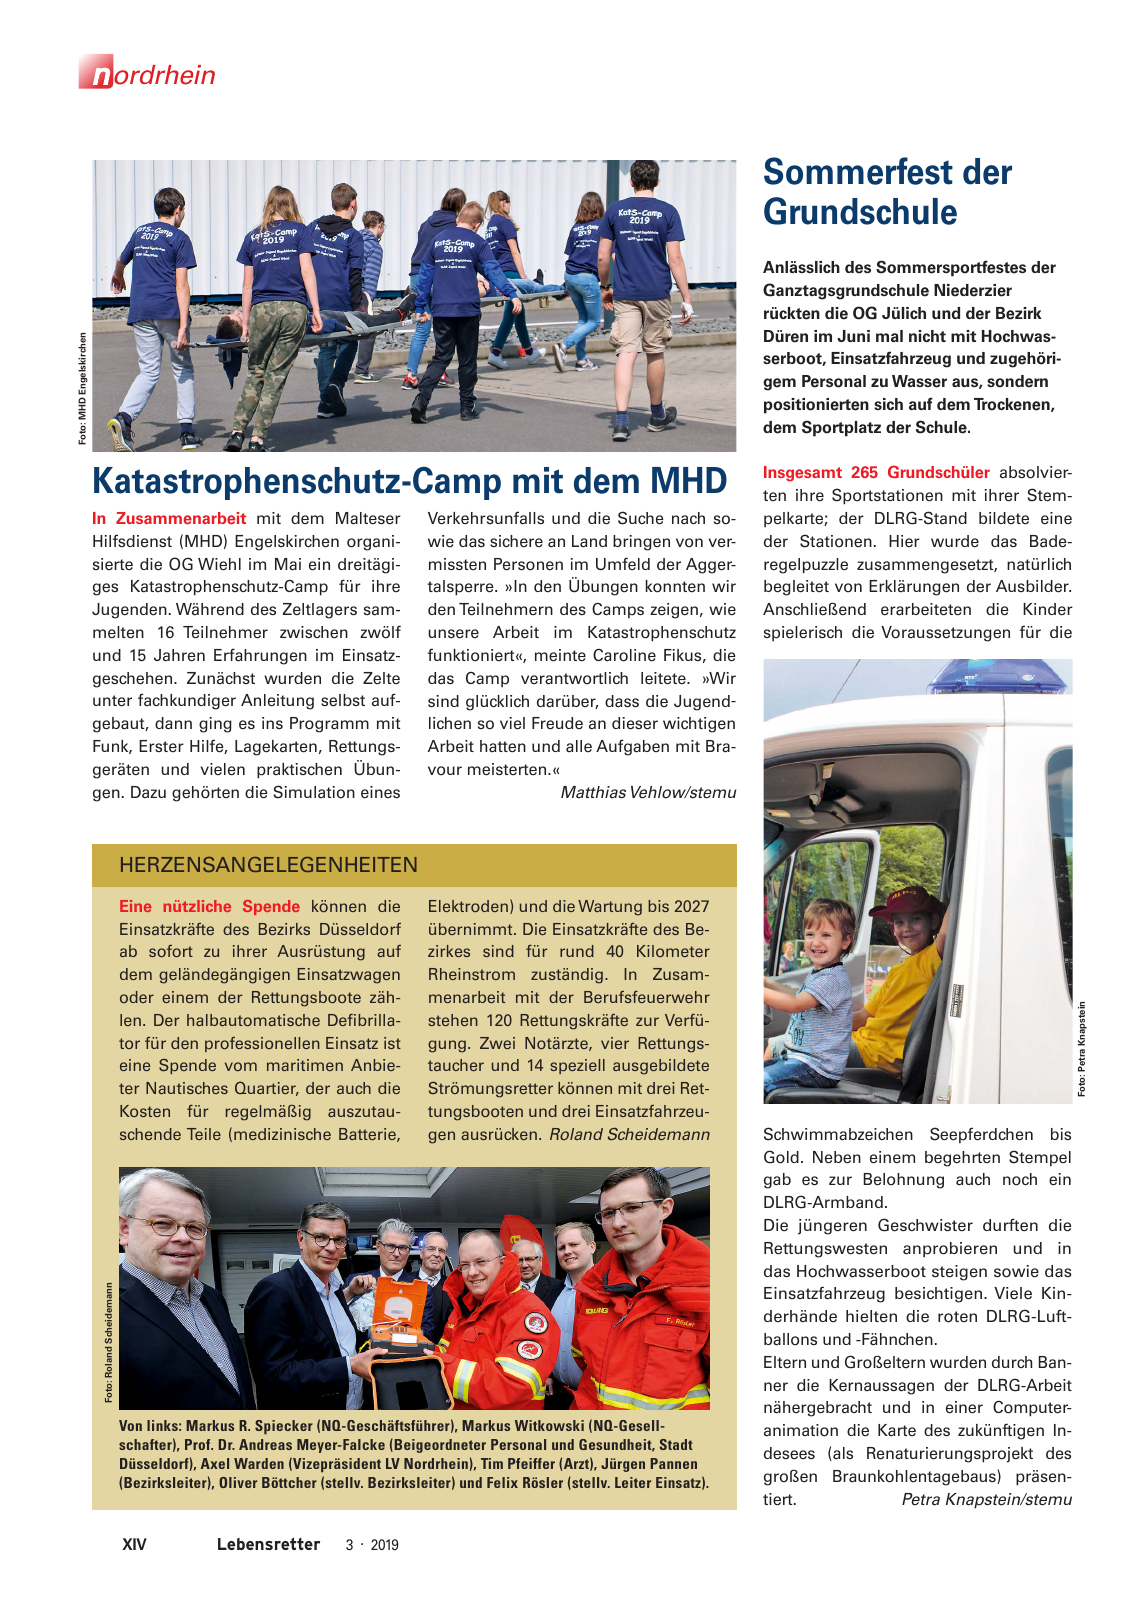 Vorschau Lebensretter 3/2019 - Nordrhein Regionalausgabe Seite 16